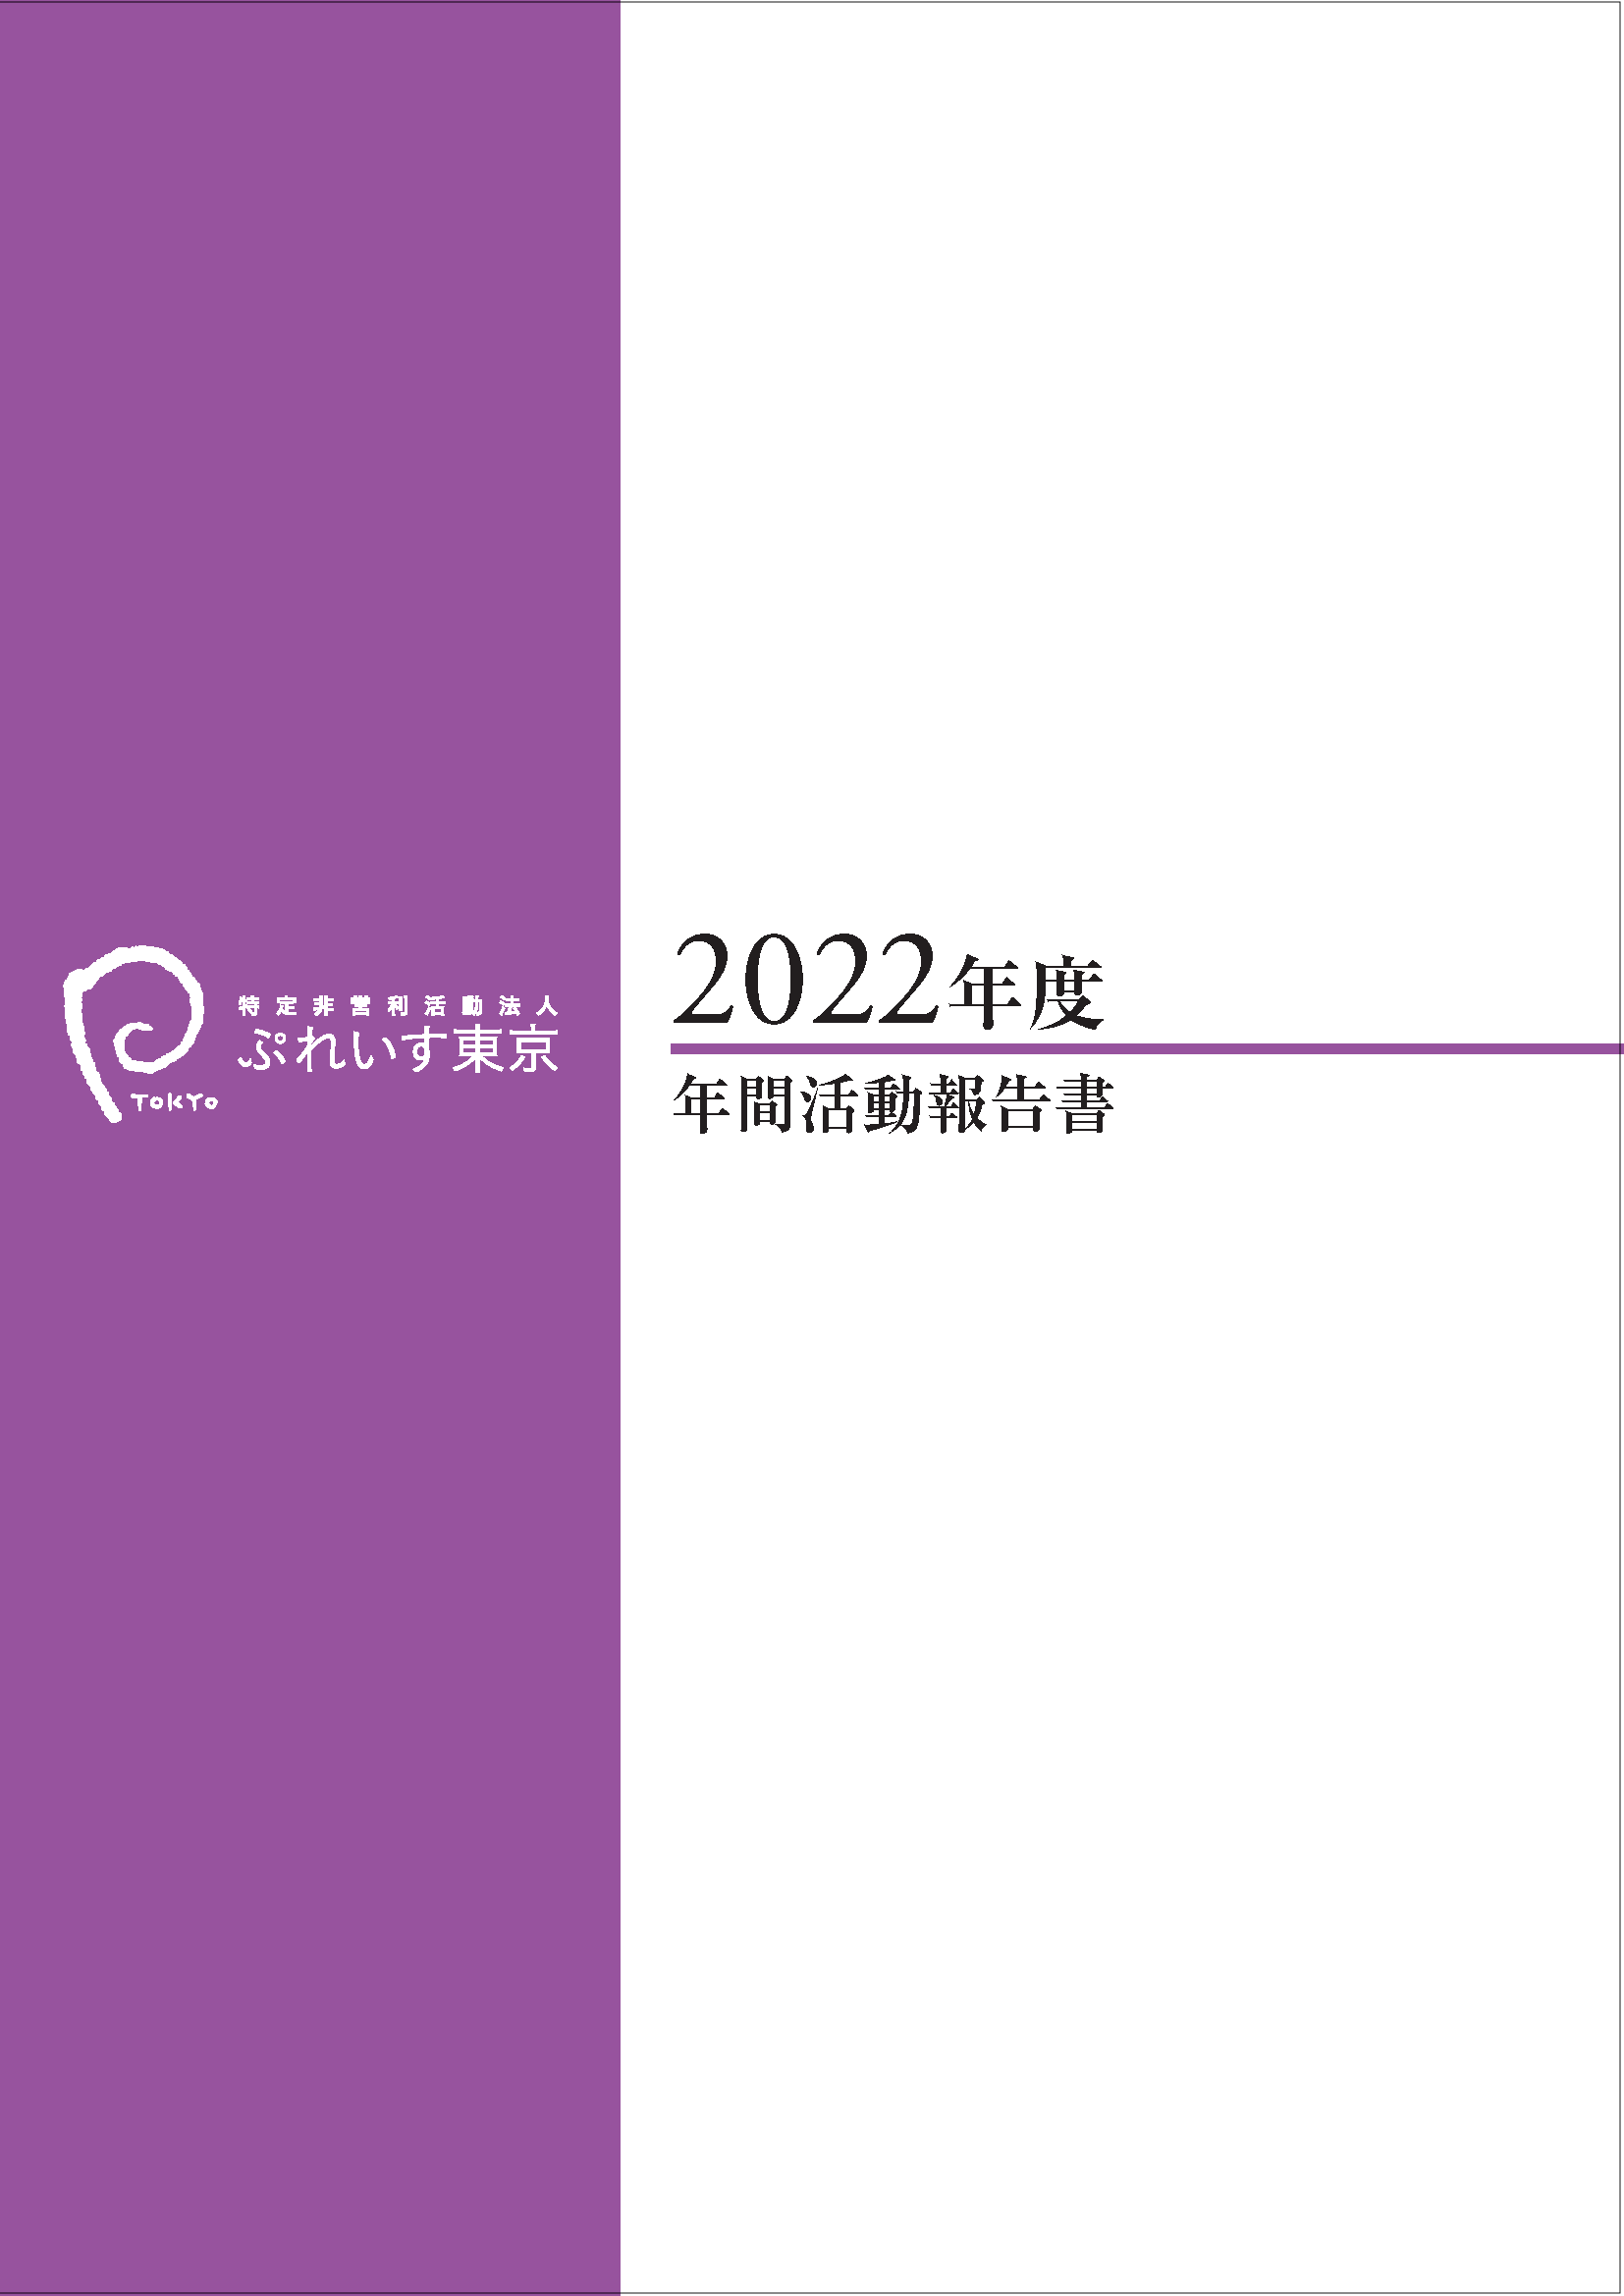 2022年度年間活動報告書表紙